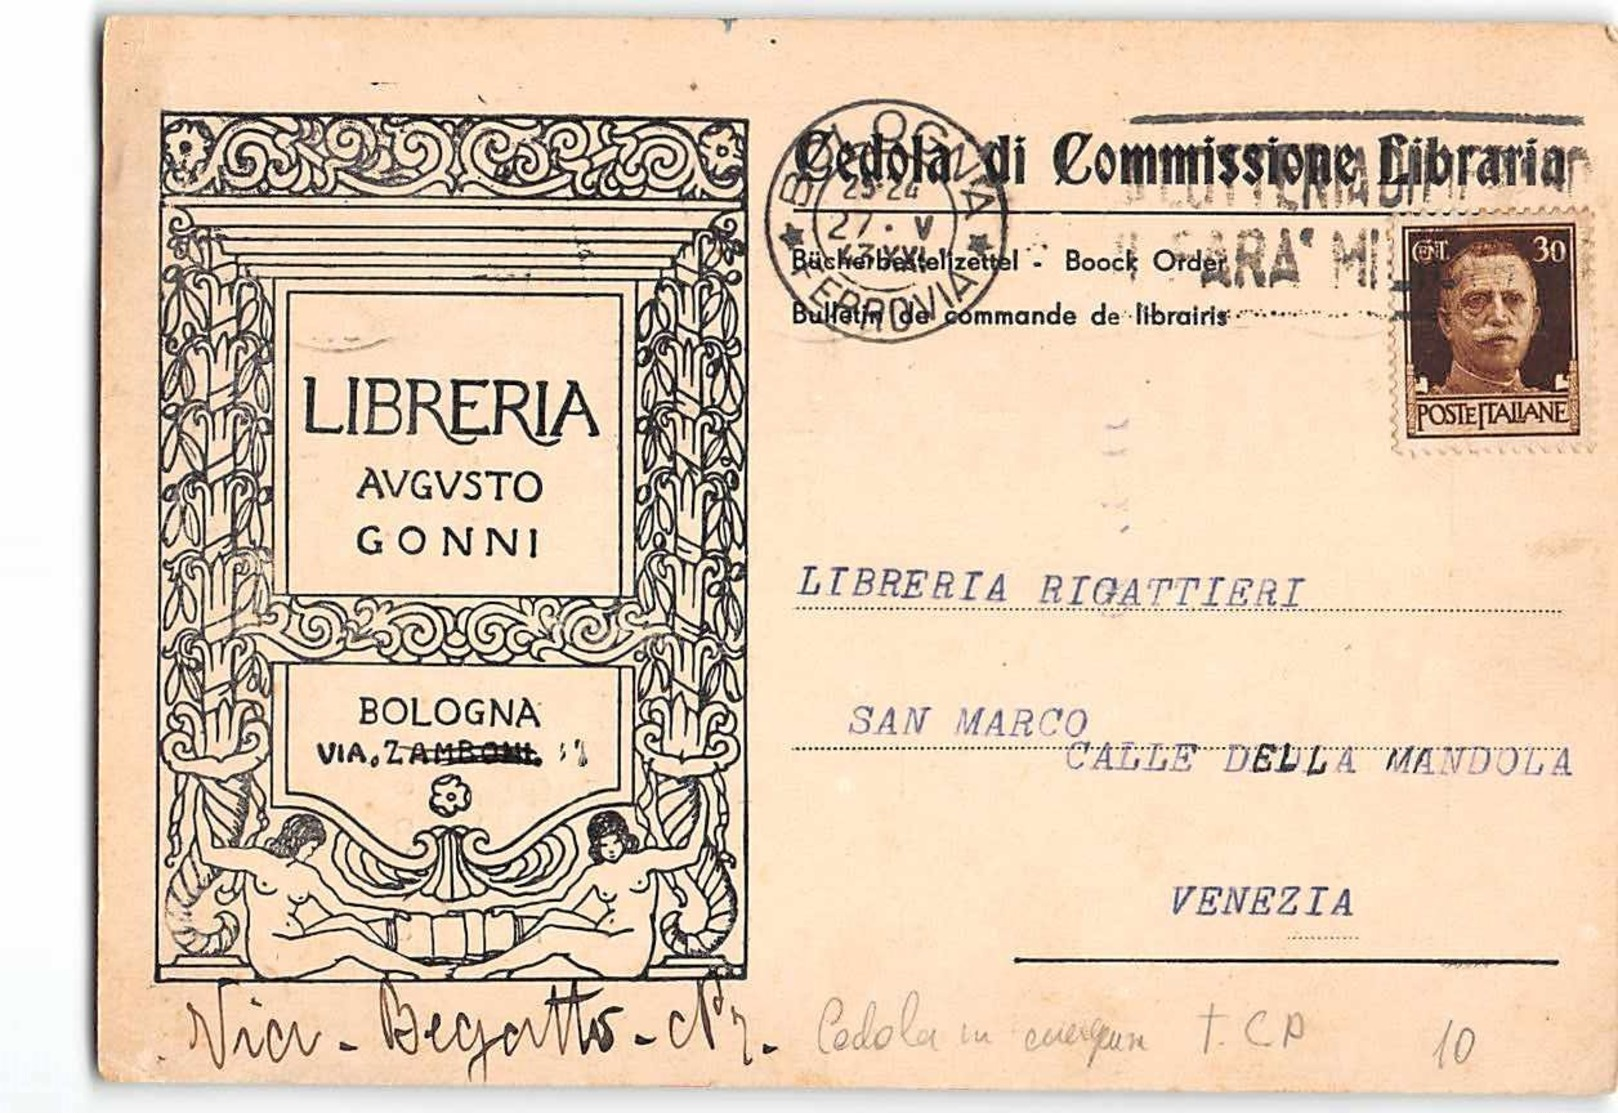 15748 01 CEDOLA COMMISSIONE LIBRARIA LIBRERIA AUGUSTO GONNI BOLOGNA X VENEZIA - Entiers Postaux